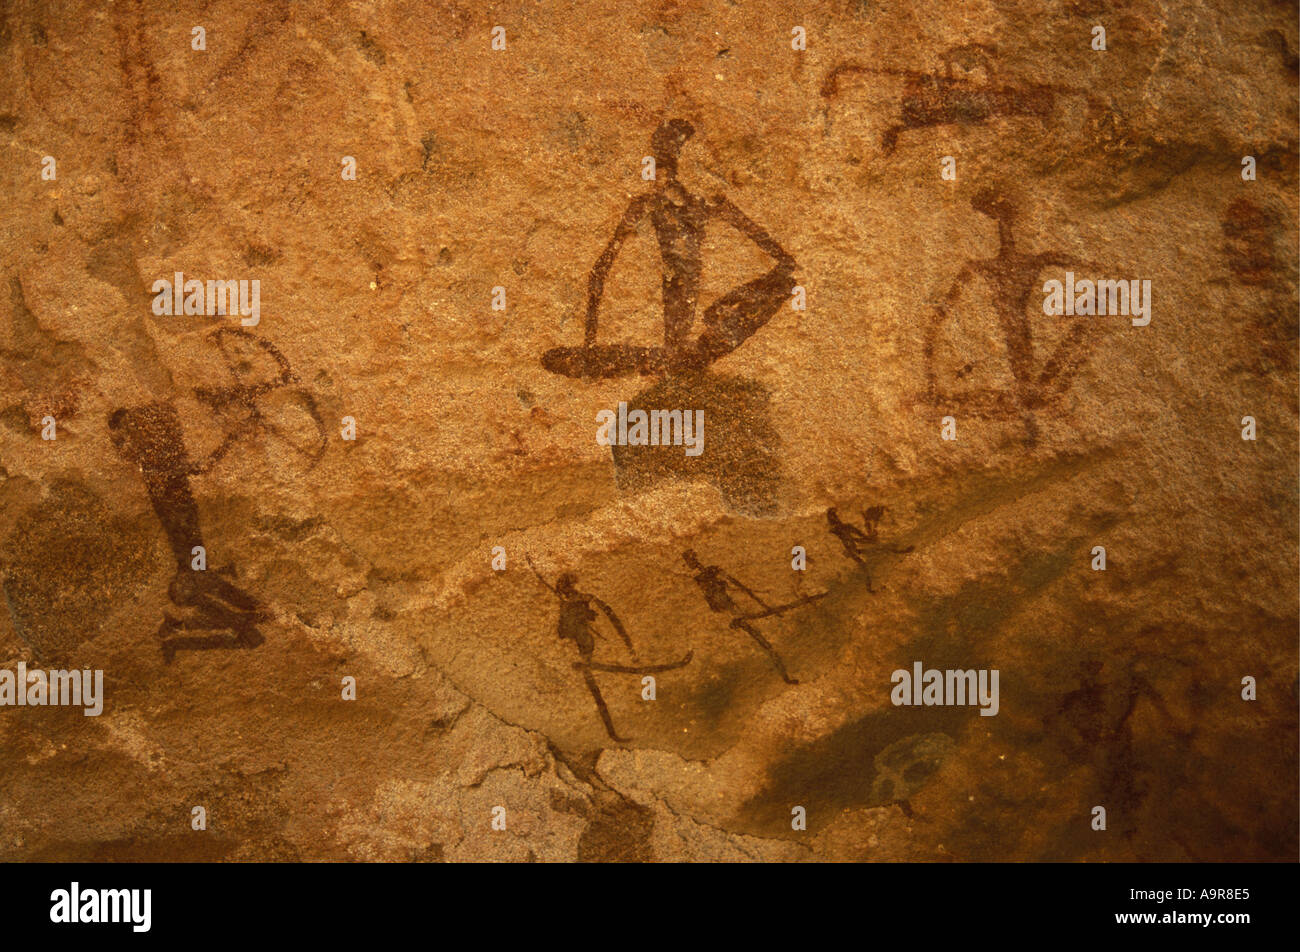 Felsmalereien, die von San Leute oder Buschmänner Twfelfontein National Monument Damaraland Namibia Nordafrika Stockfoto